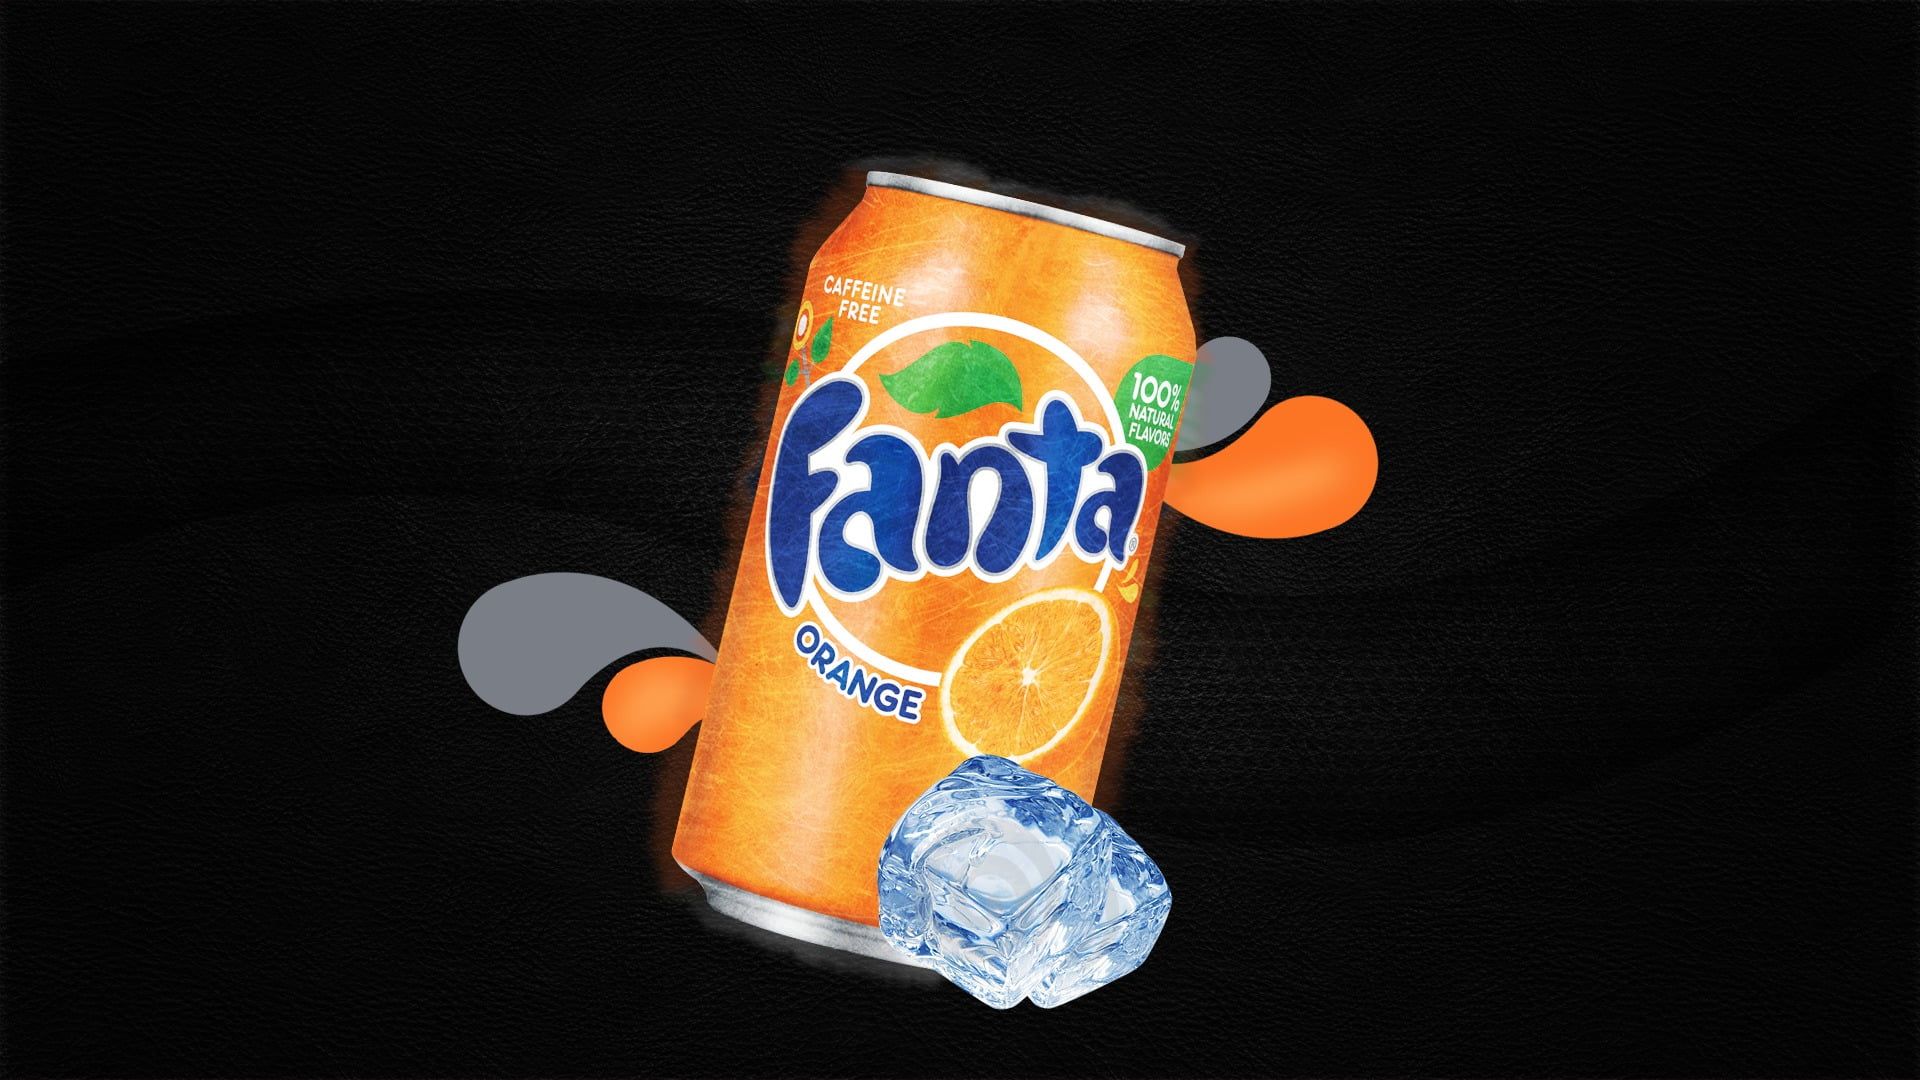 HD wallpaper: Fanta drinking can, food and drink, orange color, indoors, black background. Fanta, Orange drinks, Fruit drinks